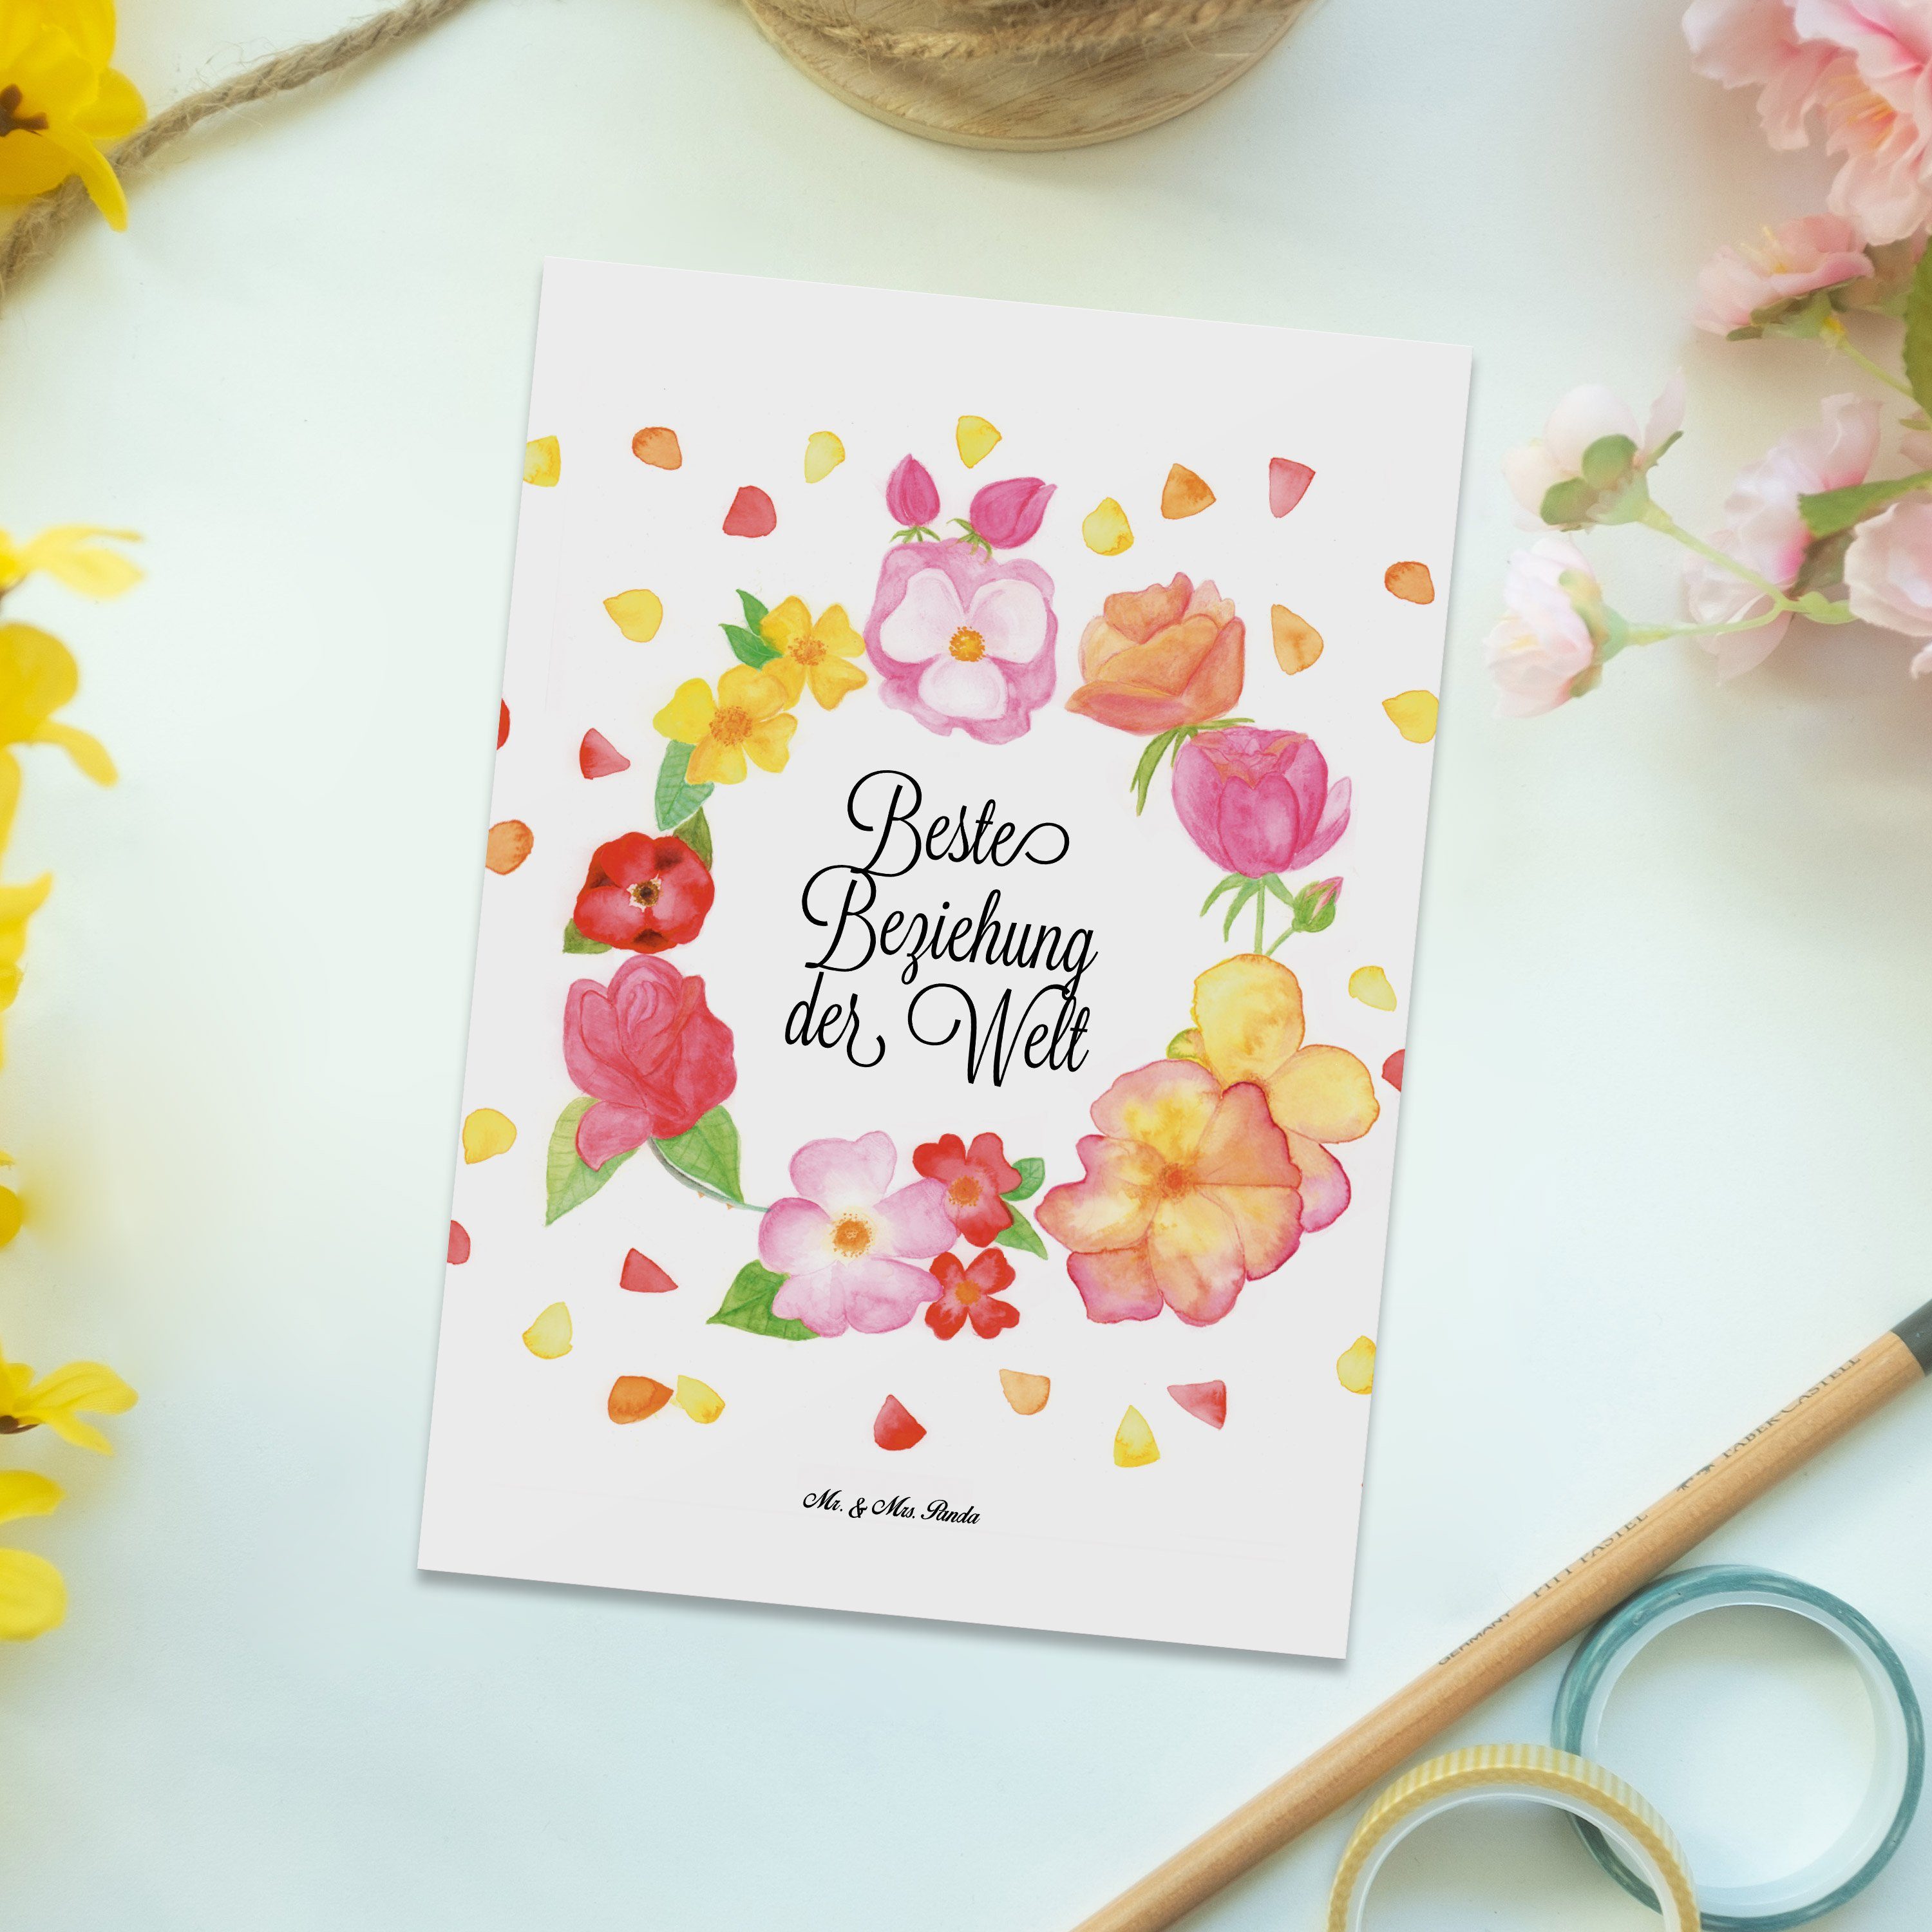 Mr. & Mrs. Weiß Karte, - Geschenk, Beziehung Postkarte - Zusammen Liebe Flower, Blumen Panda sei